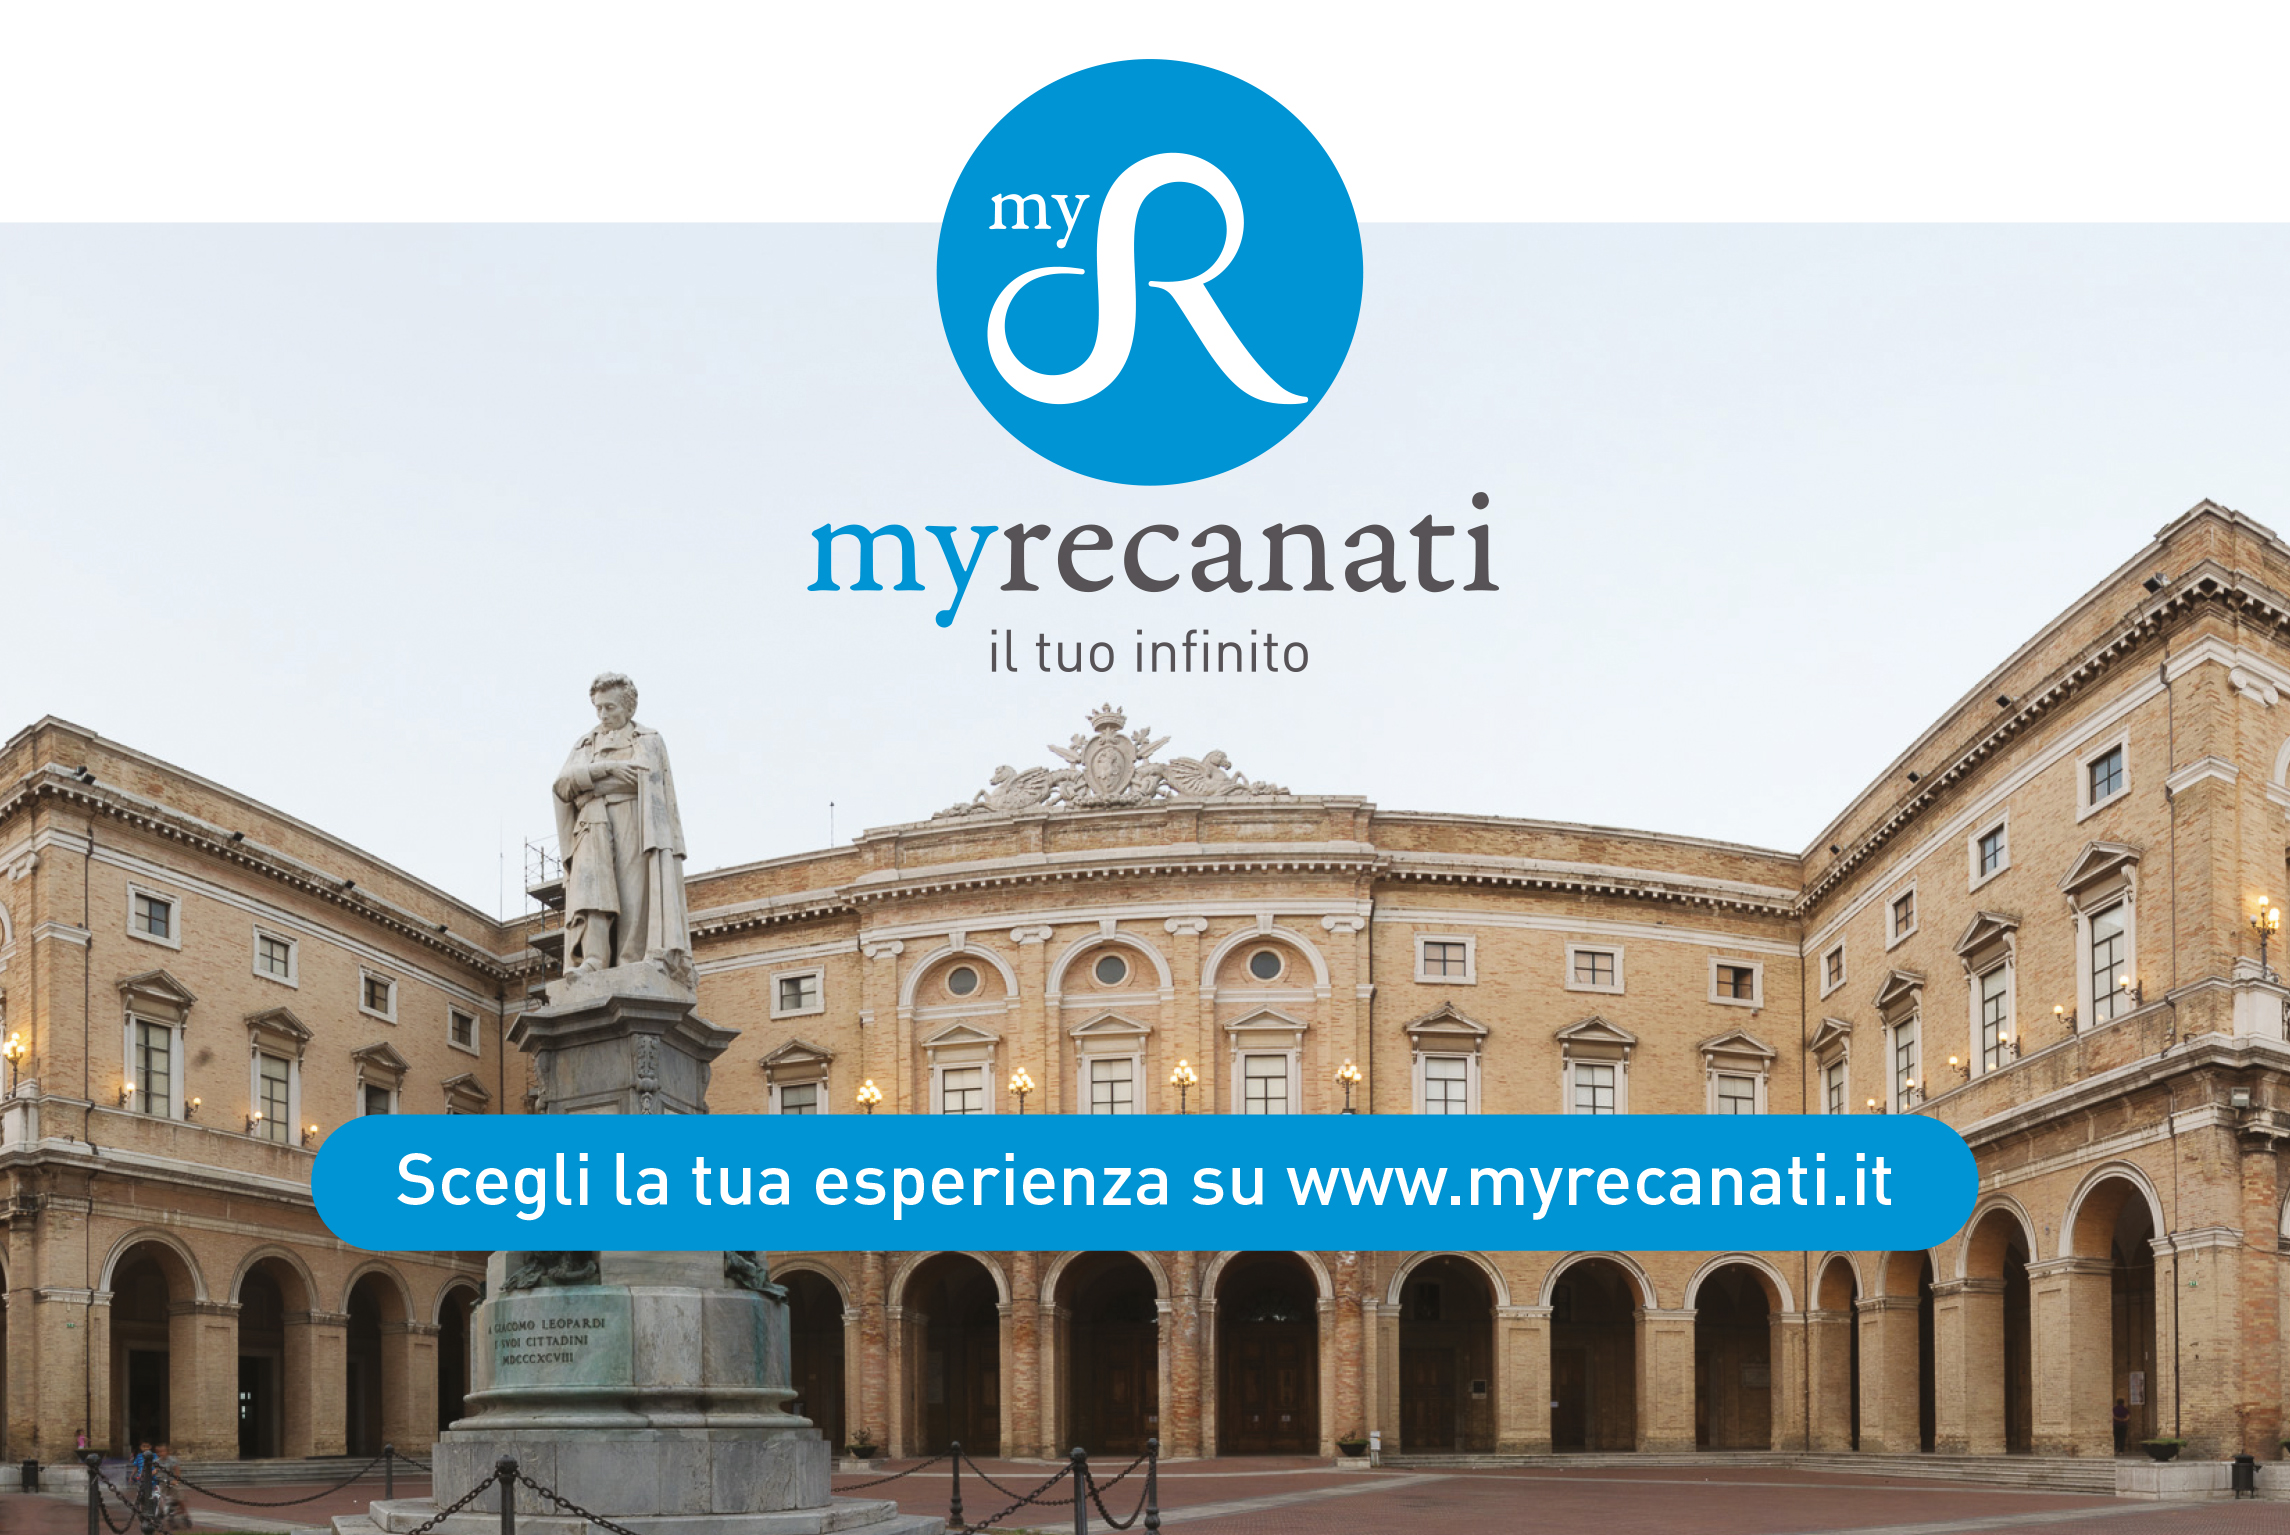 Online myrecanati.it, il nuovo portale turistico della Città dell'Infinito